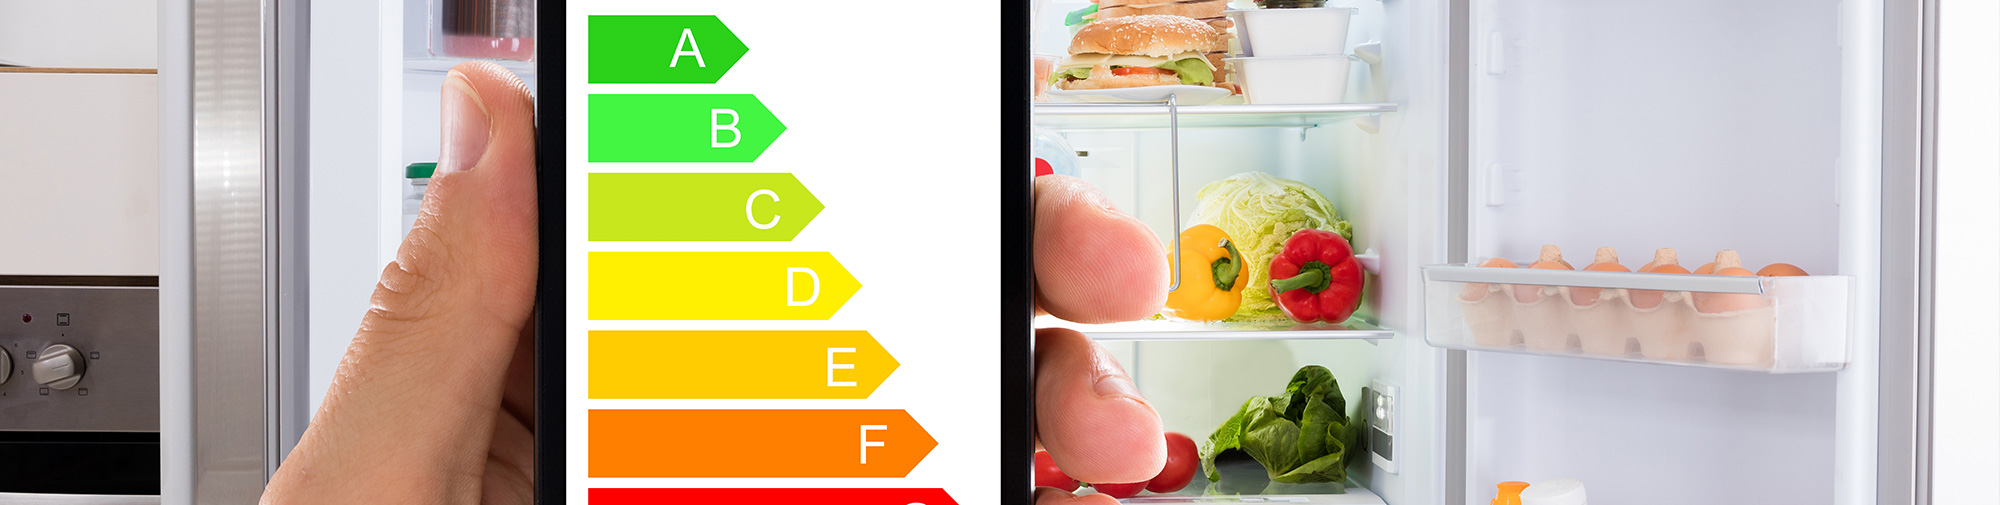 Consommation d'énergie : vaut-il mieux un frigo vide ou un frigo plein ?